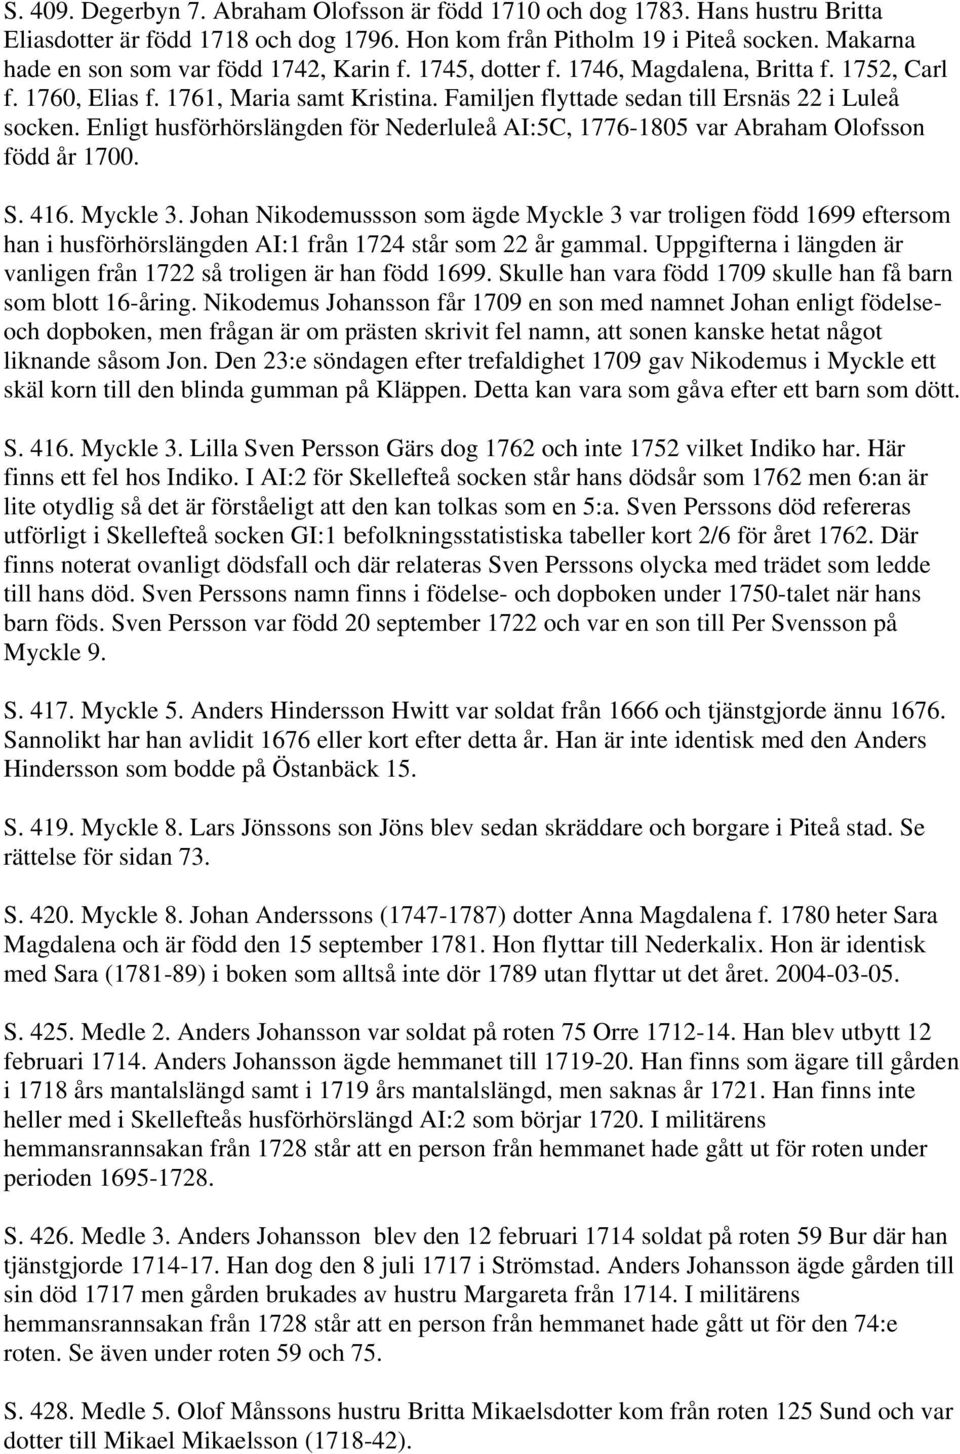 Familjen flyttade sedan till Ersnäs 22 i Luleå socken. Enligt husförhörslängden för Nederluleå AI:5C, 1776-1805 var Abraham Olofsson född år 1700. S. 416. Myckle 3.